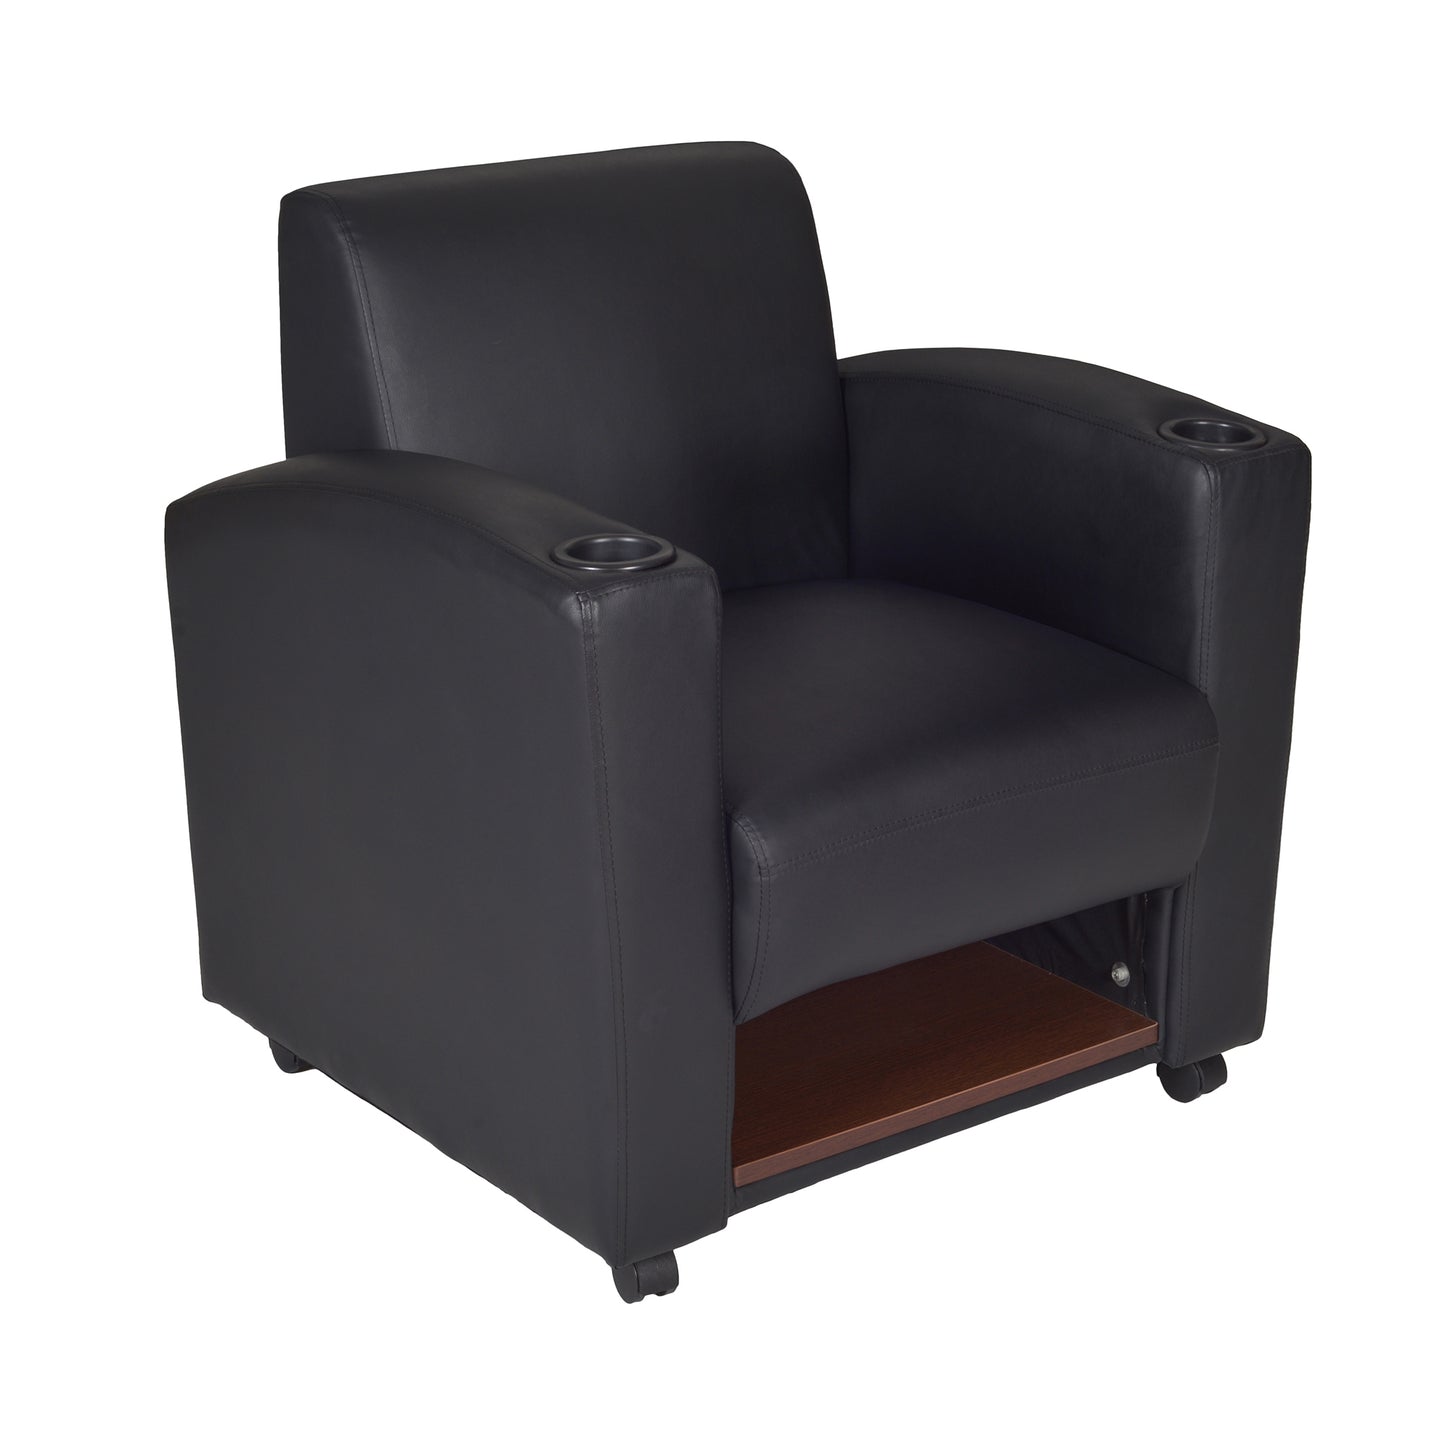 Regency Nova Tablet Arm Chair w/ Storage